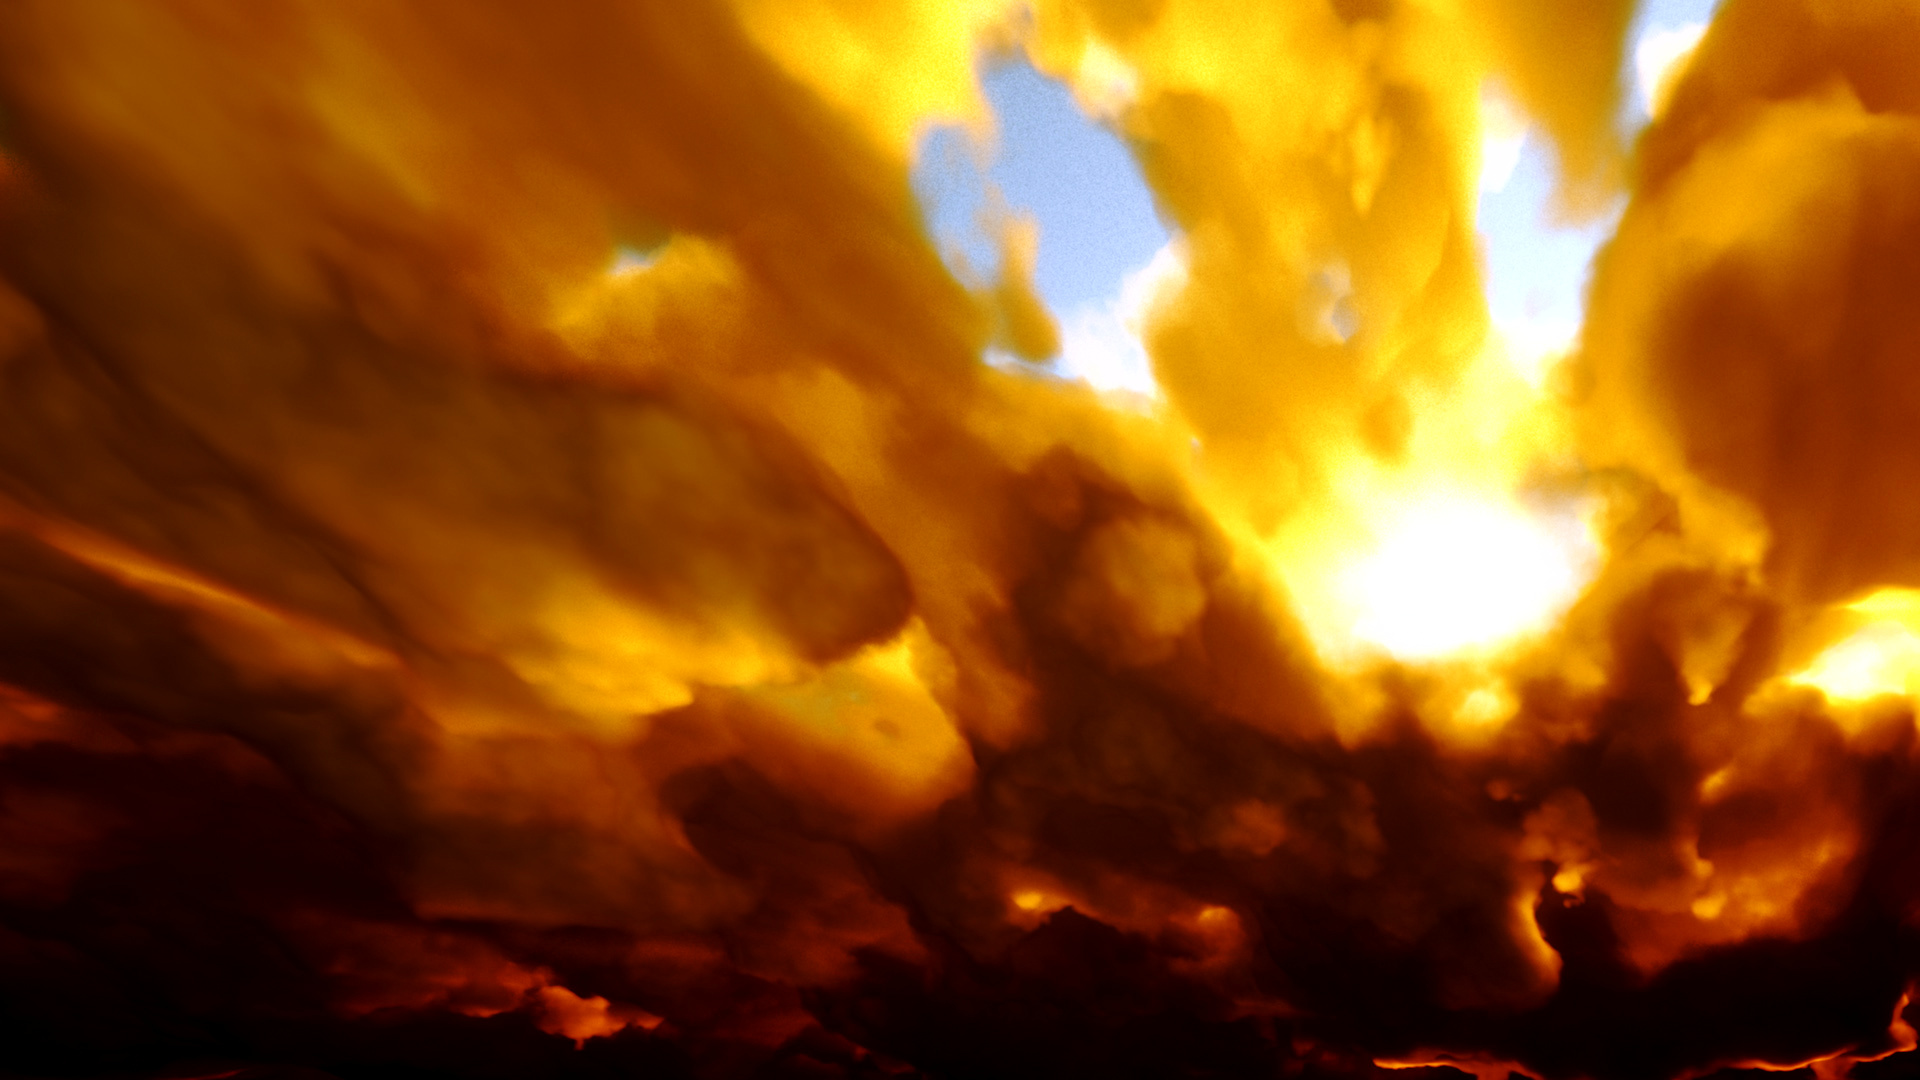 Fiery Sky 3 by macsix on DeviantArt